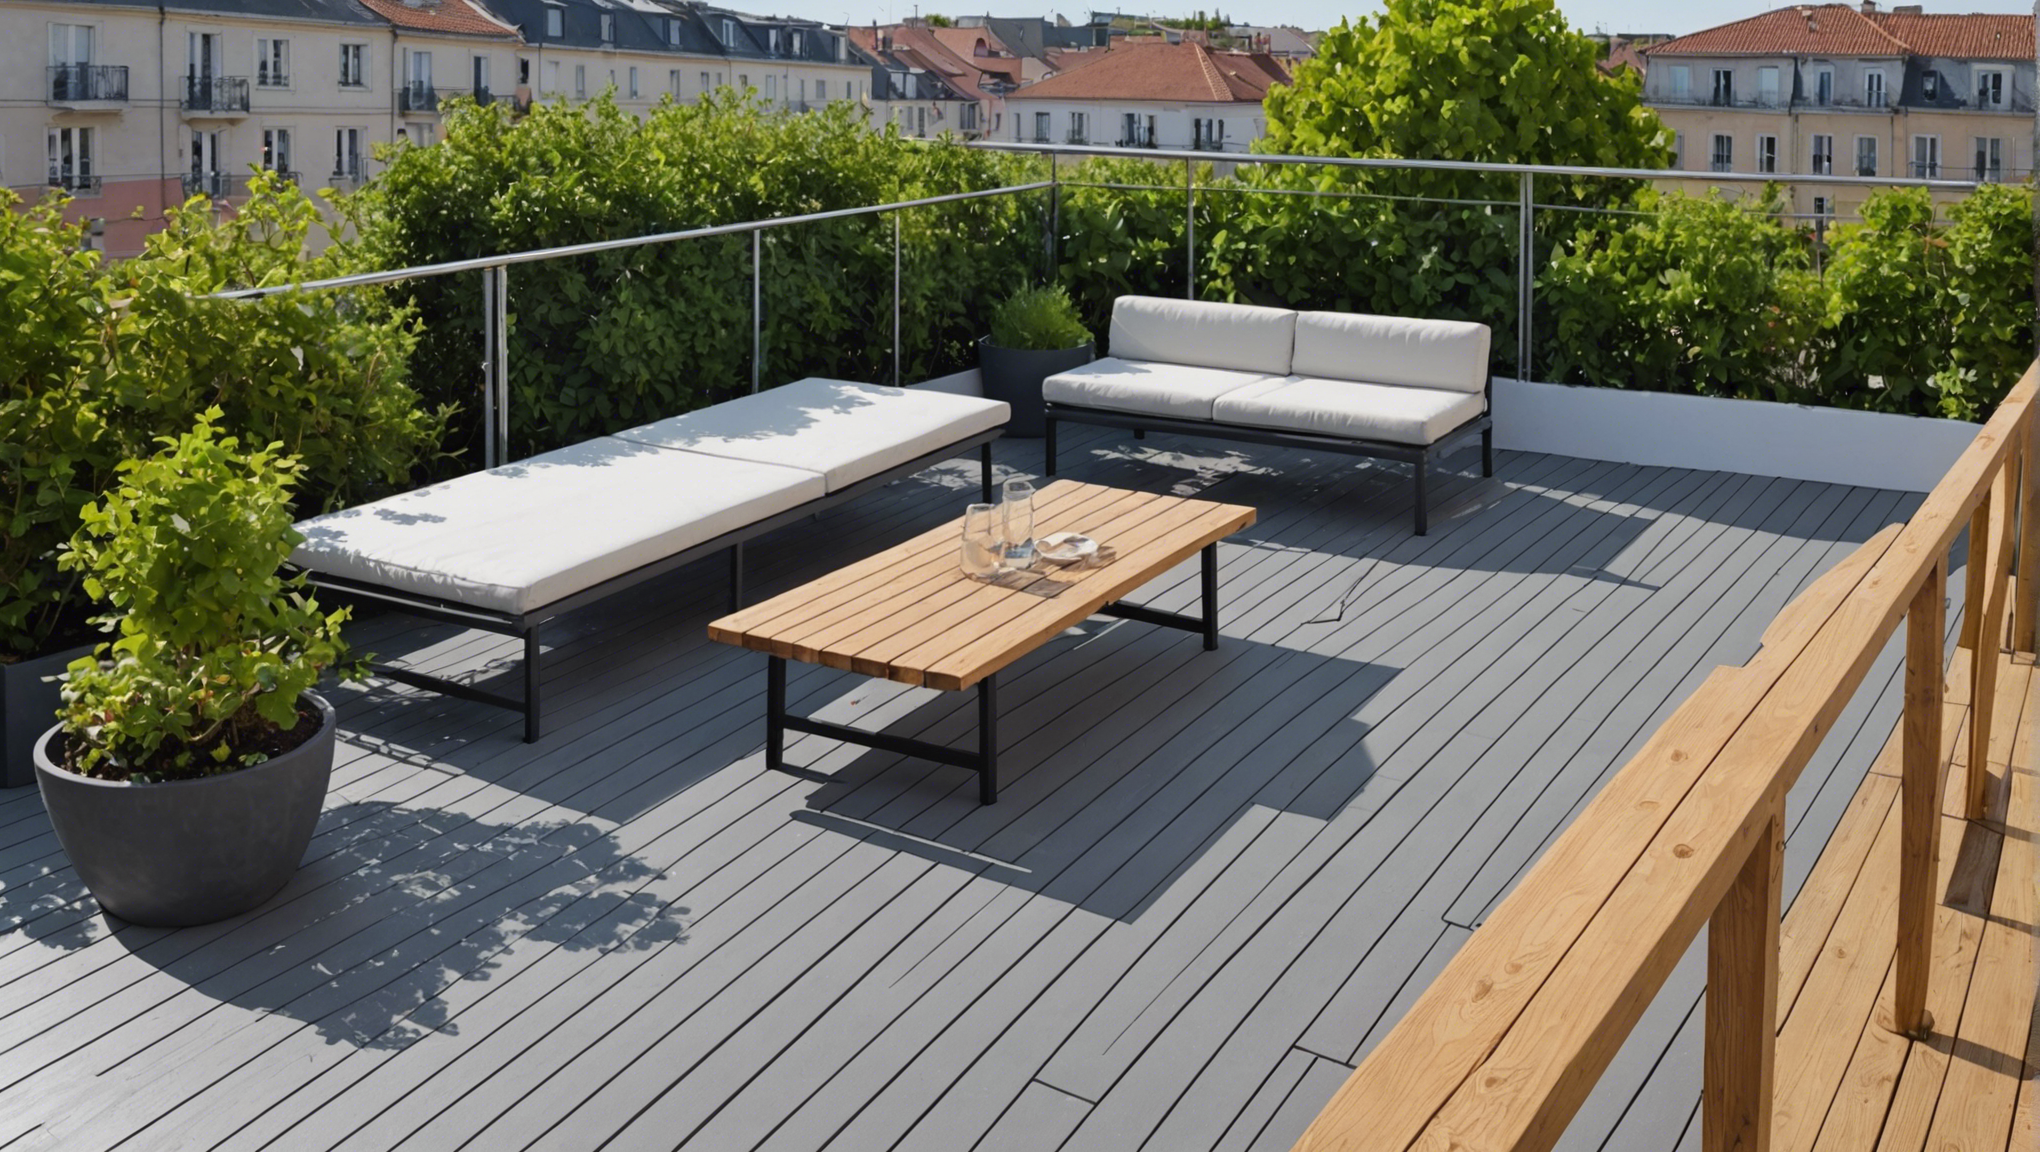 découvrez le meilleur isolant pour une toiture terrasse et améliorez l'efficacité énergétique de votre bâtiment. conseils et solutions pour une isolation optimale.